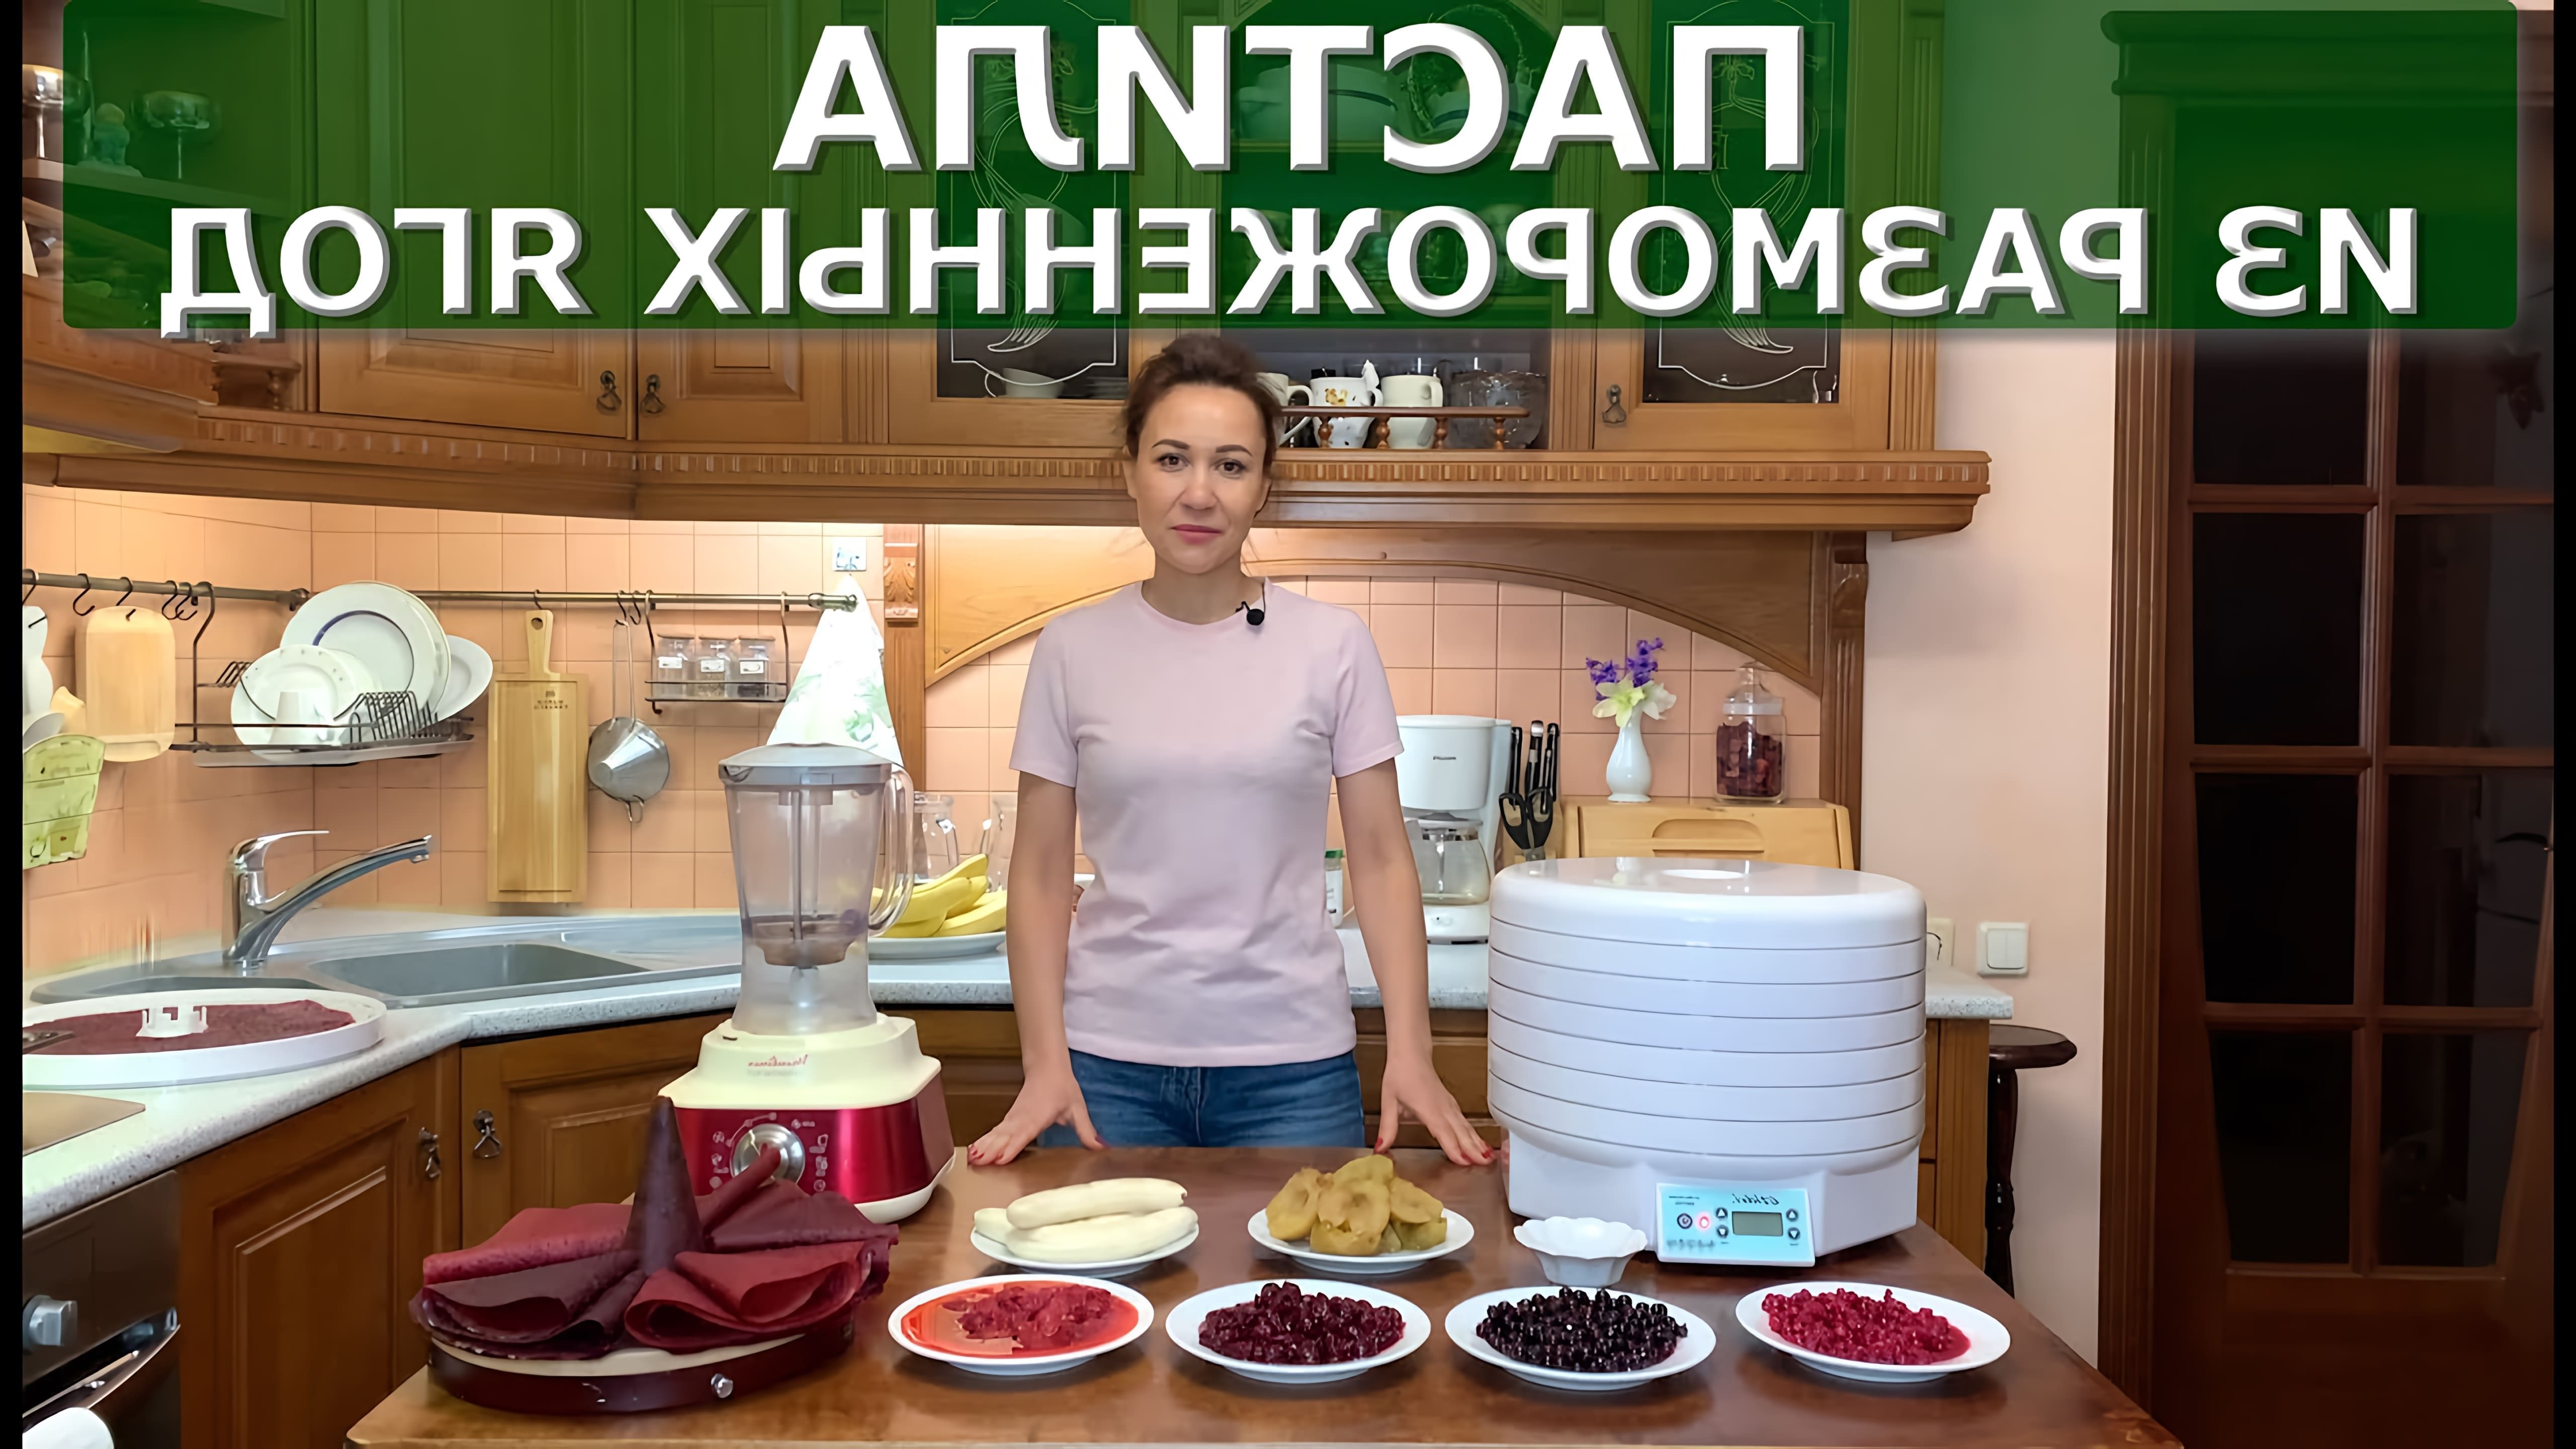 В этом видео Анна готовит пастилу из размороженных ягод